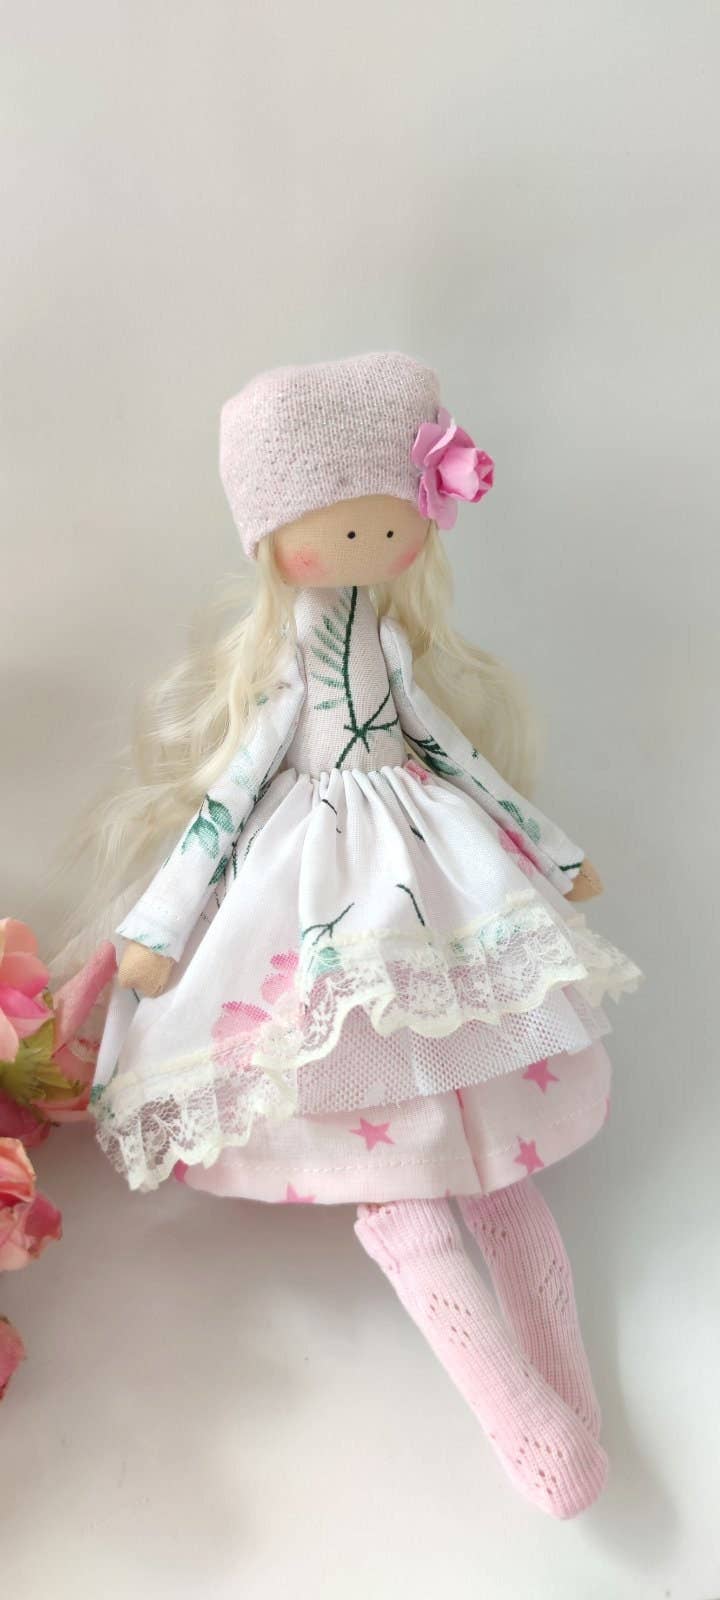 Doll, Cloth Doll, Handmade Doll, Soft Doll, Baby Doll, Fabric Dolls, Ragdoll, Nursery Decor, Art Doll, Tilda Doll, Pocket Doll, Rag Doll.